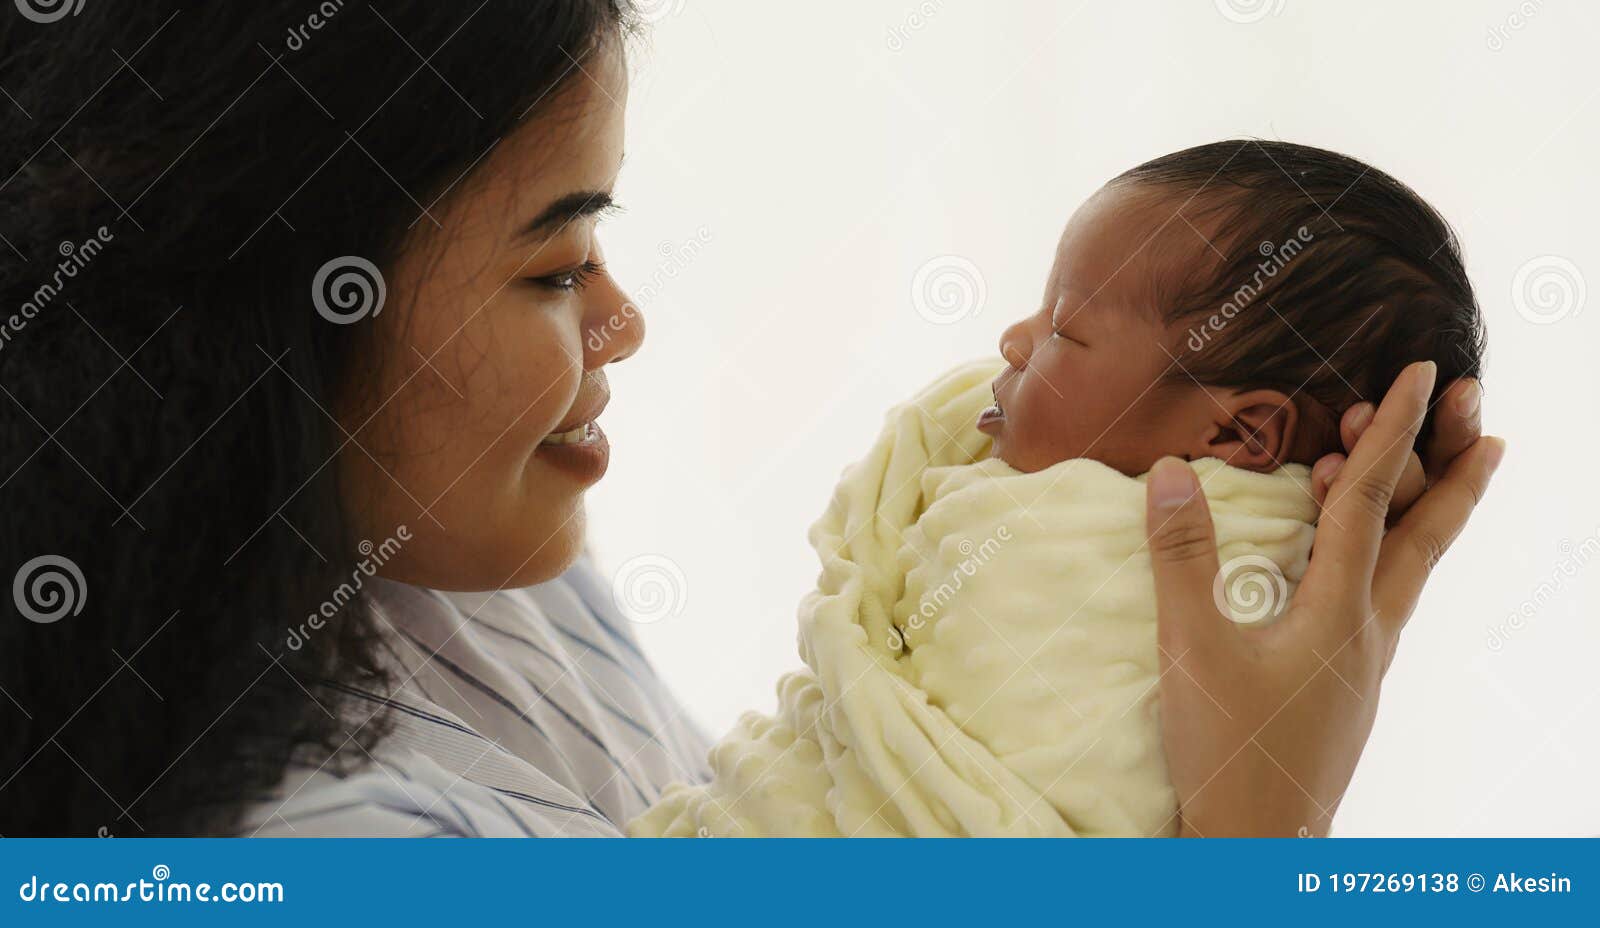 Bébé tout-petit nouveau né fille métisse chinoise française